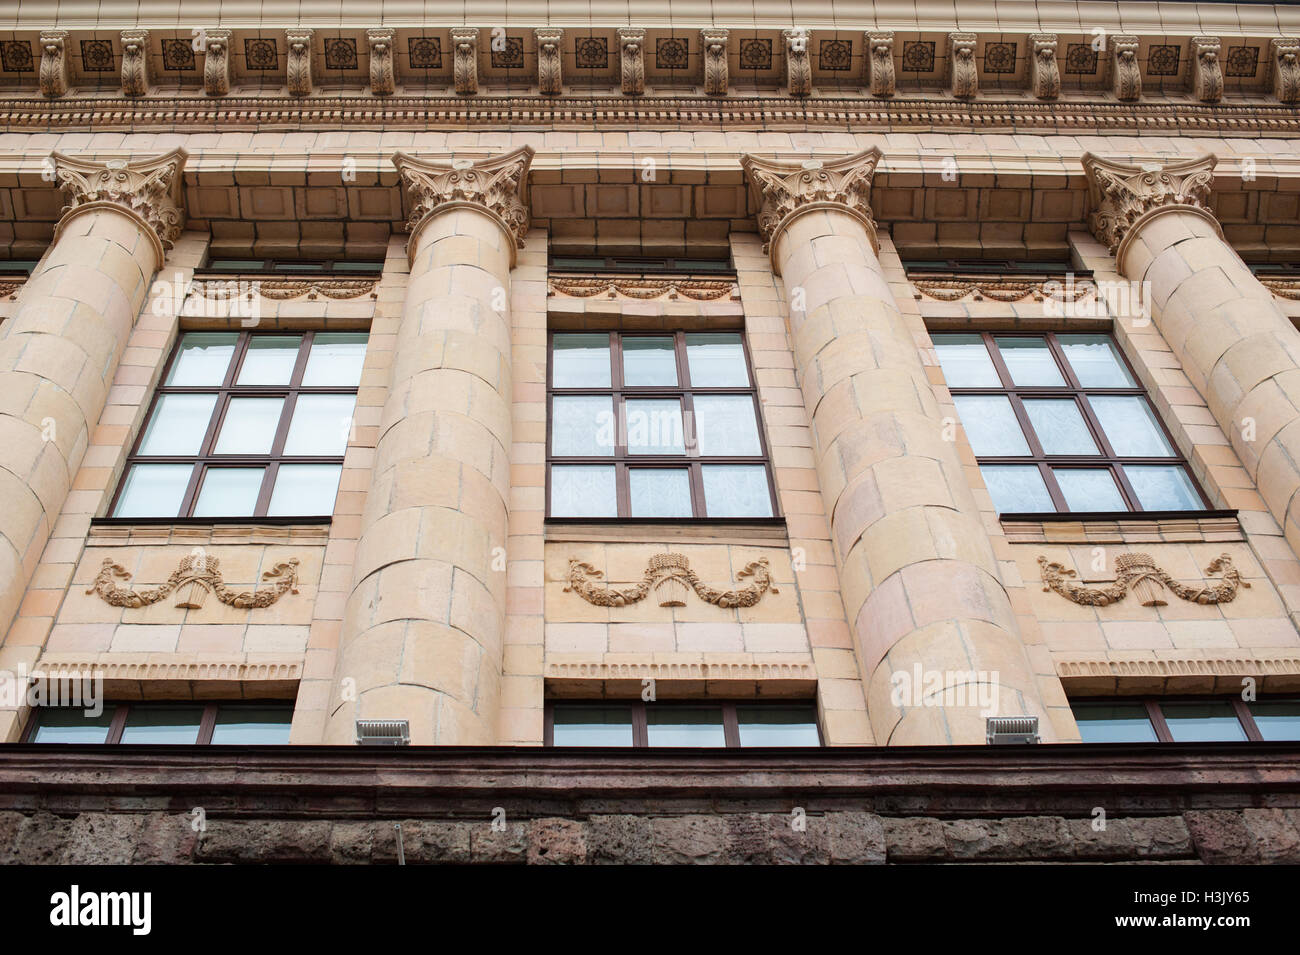 Architecture bâtiment antique avec windows dans un style classique Banque D'Images